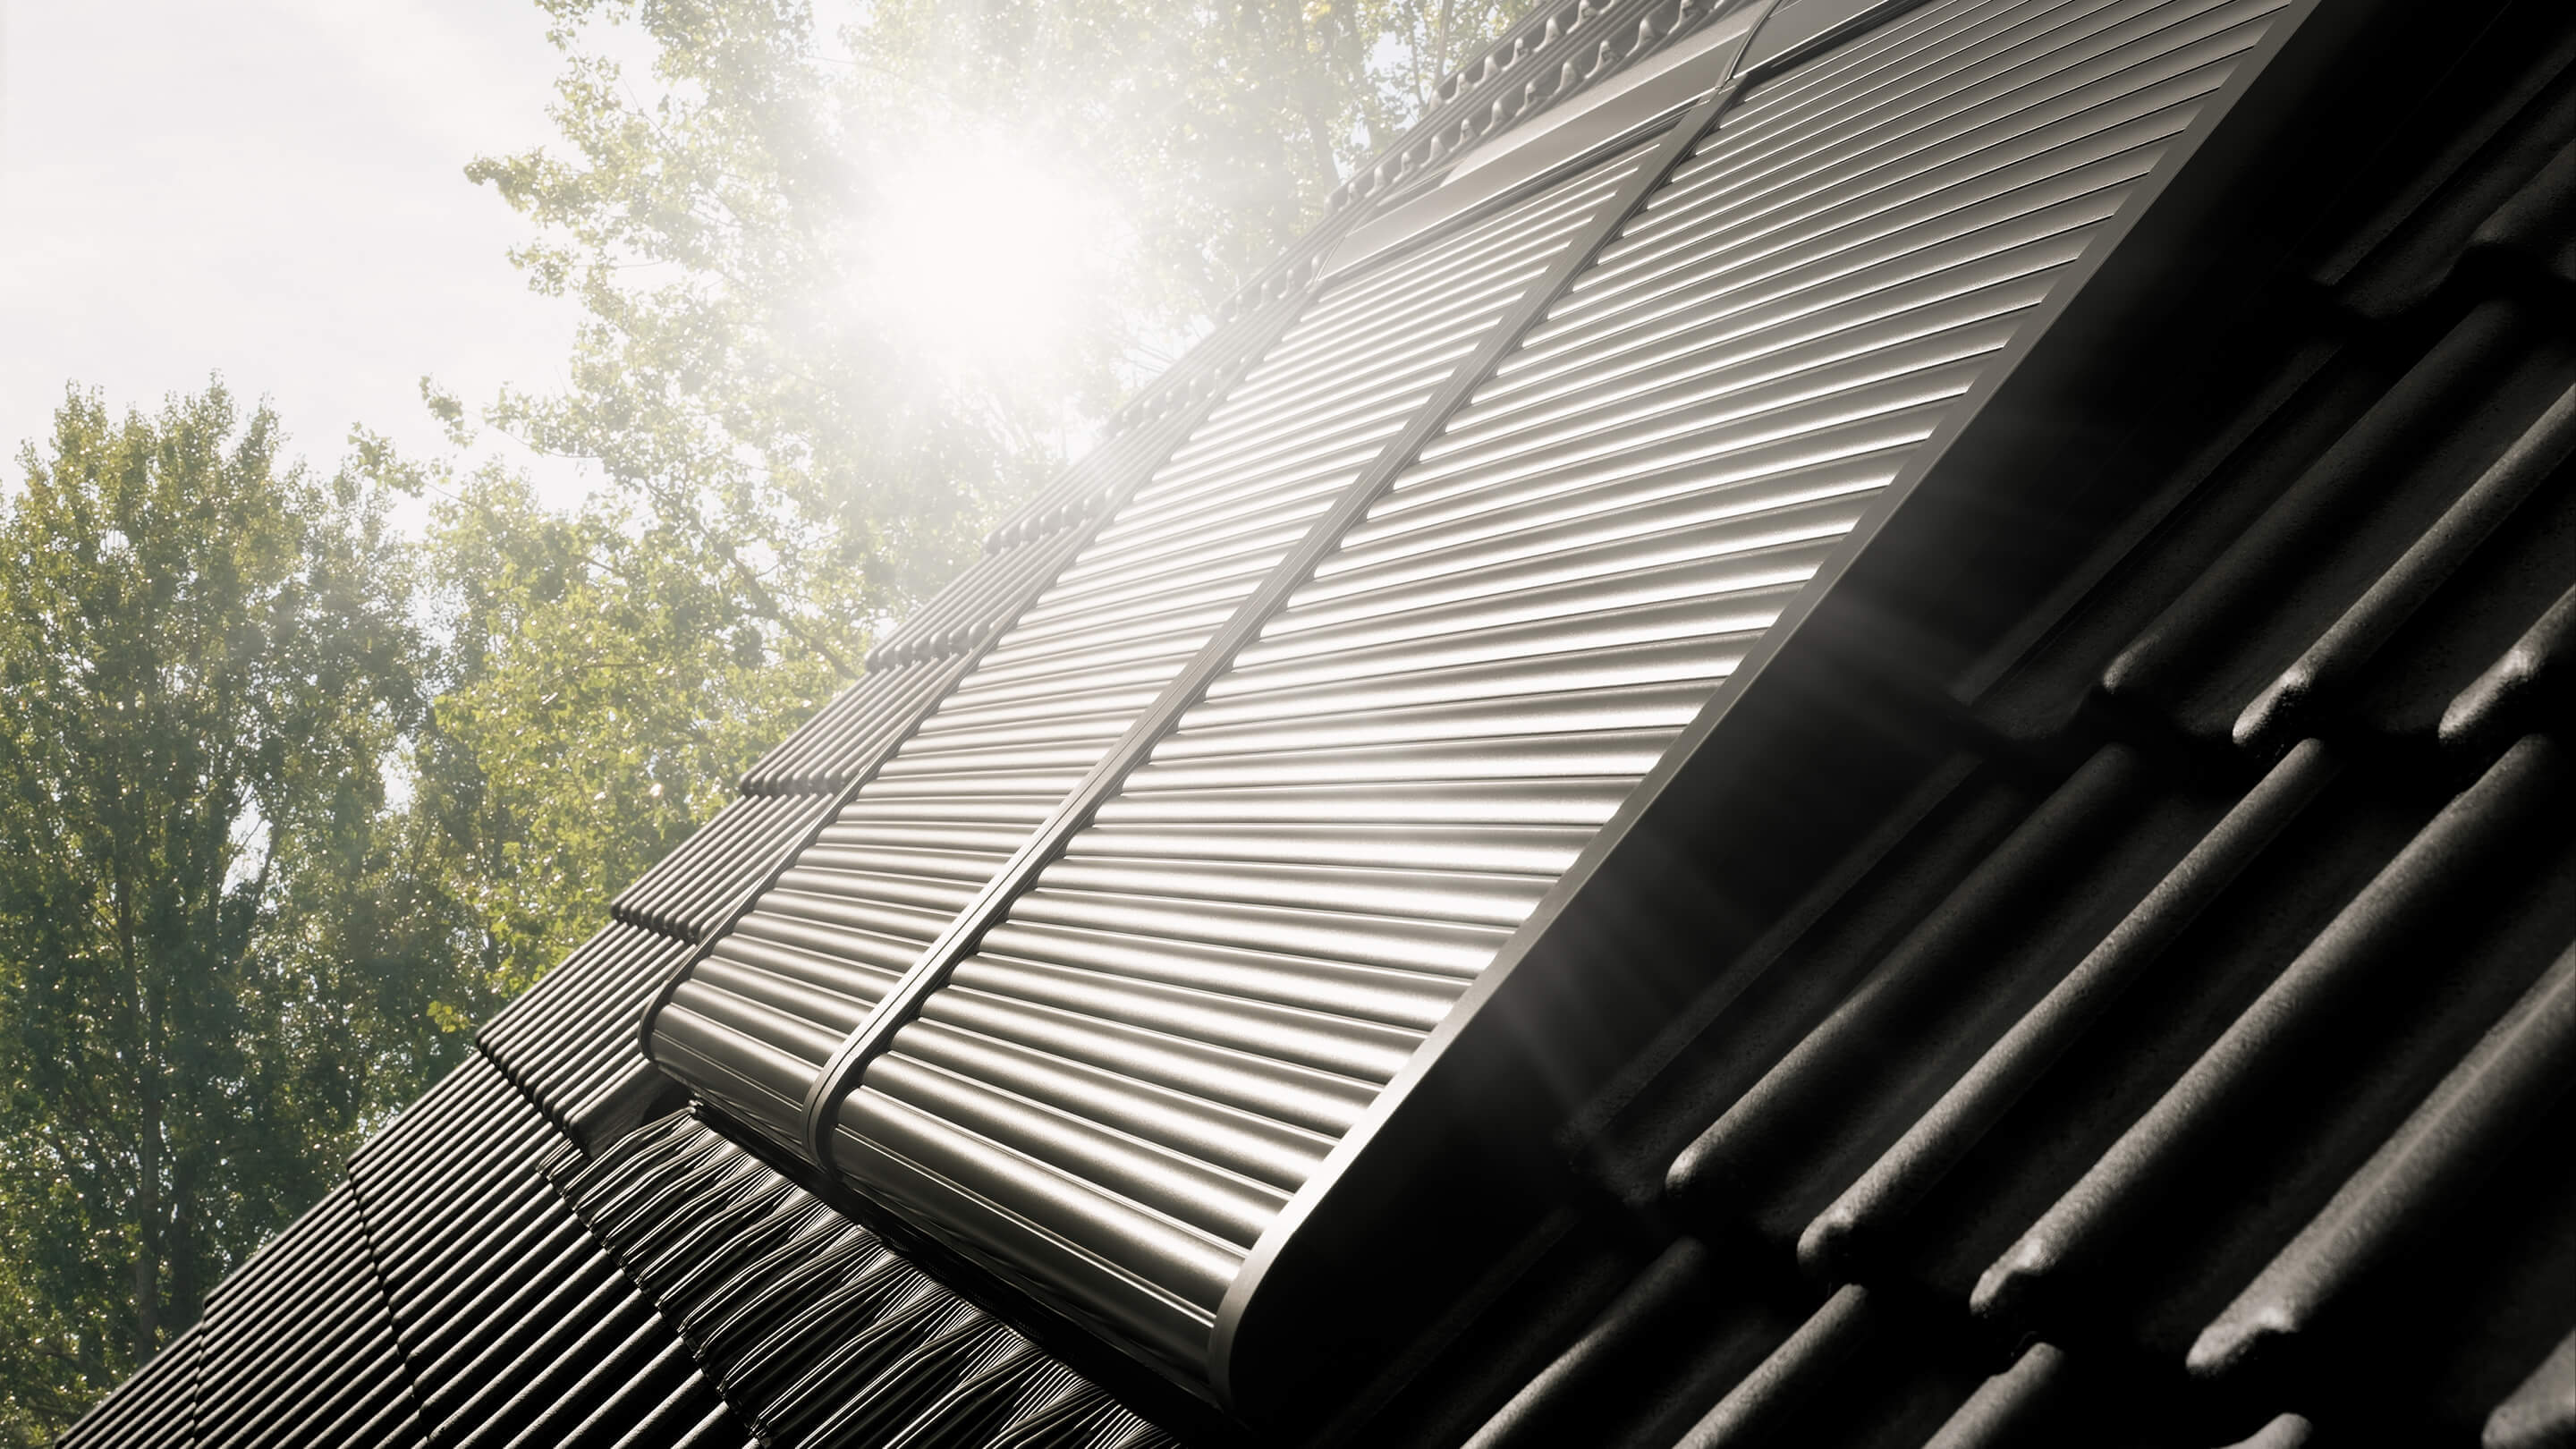 Nahaufnahme eines VELUX Dachflächenfensters mit metallenen Rollläden auf einem geneigten Dach, in Sonnenlicht getaucht.